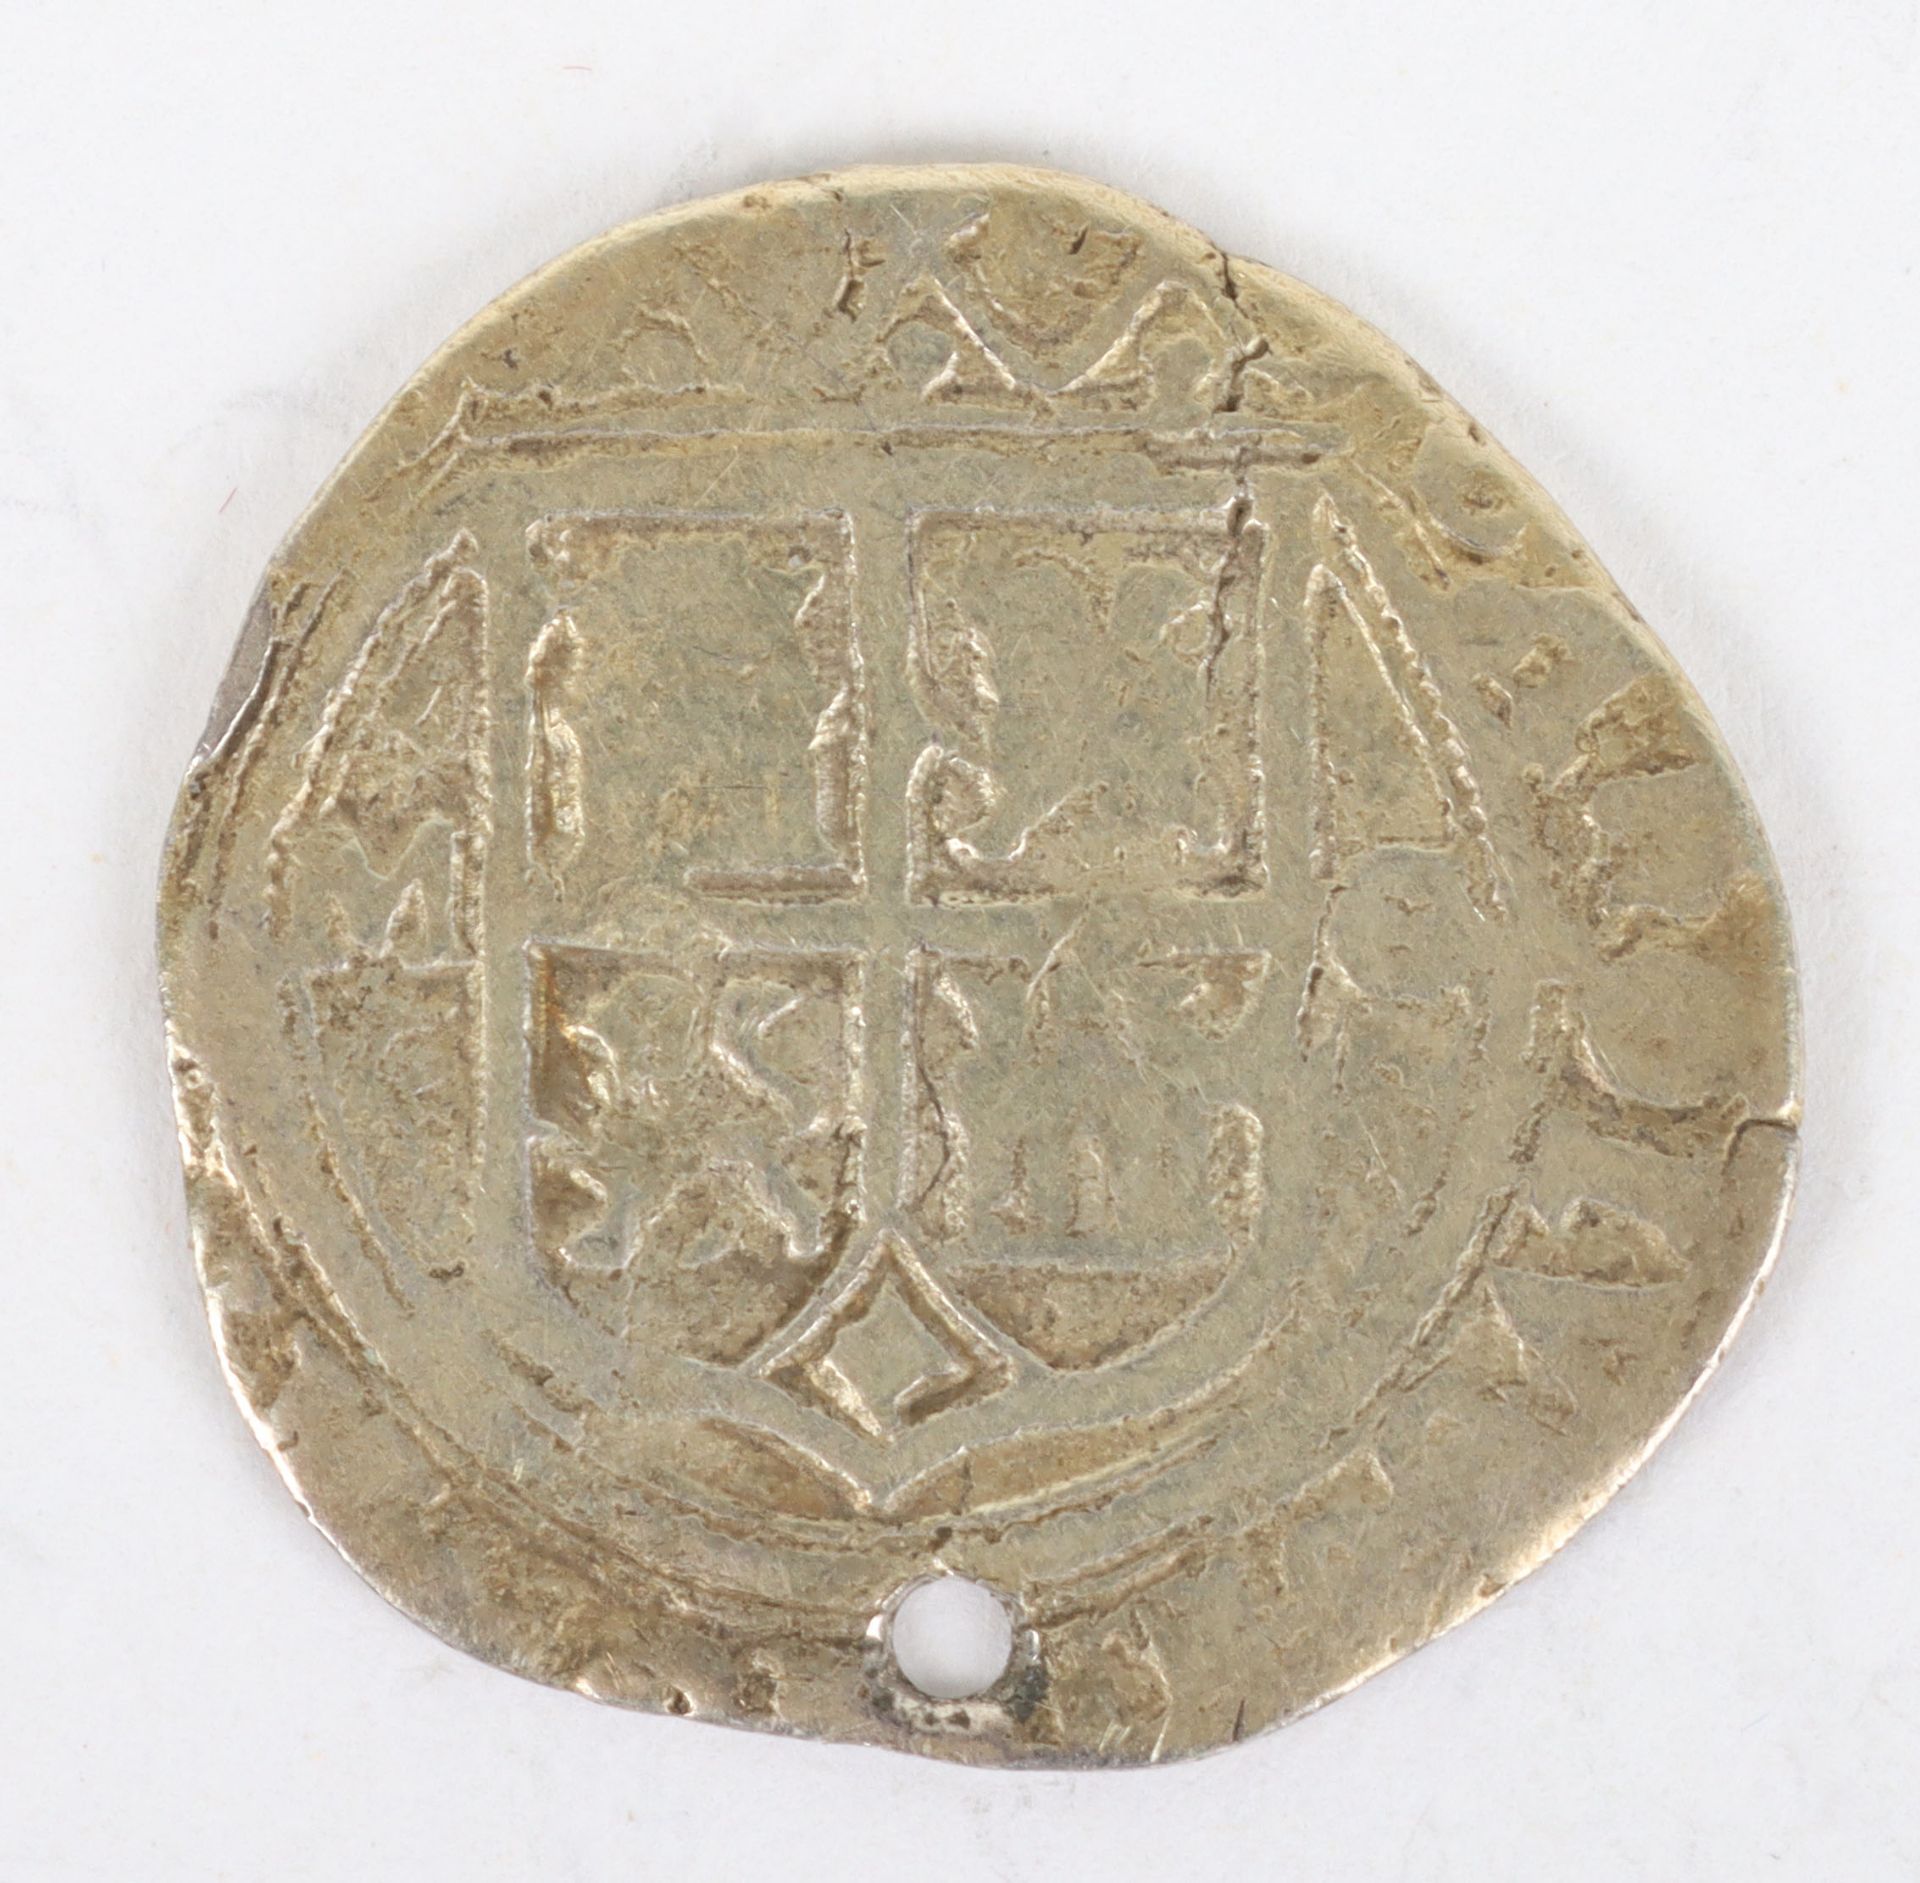 Spain, Carlos I y Juana 1506-1516, Silver 1 Real